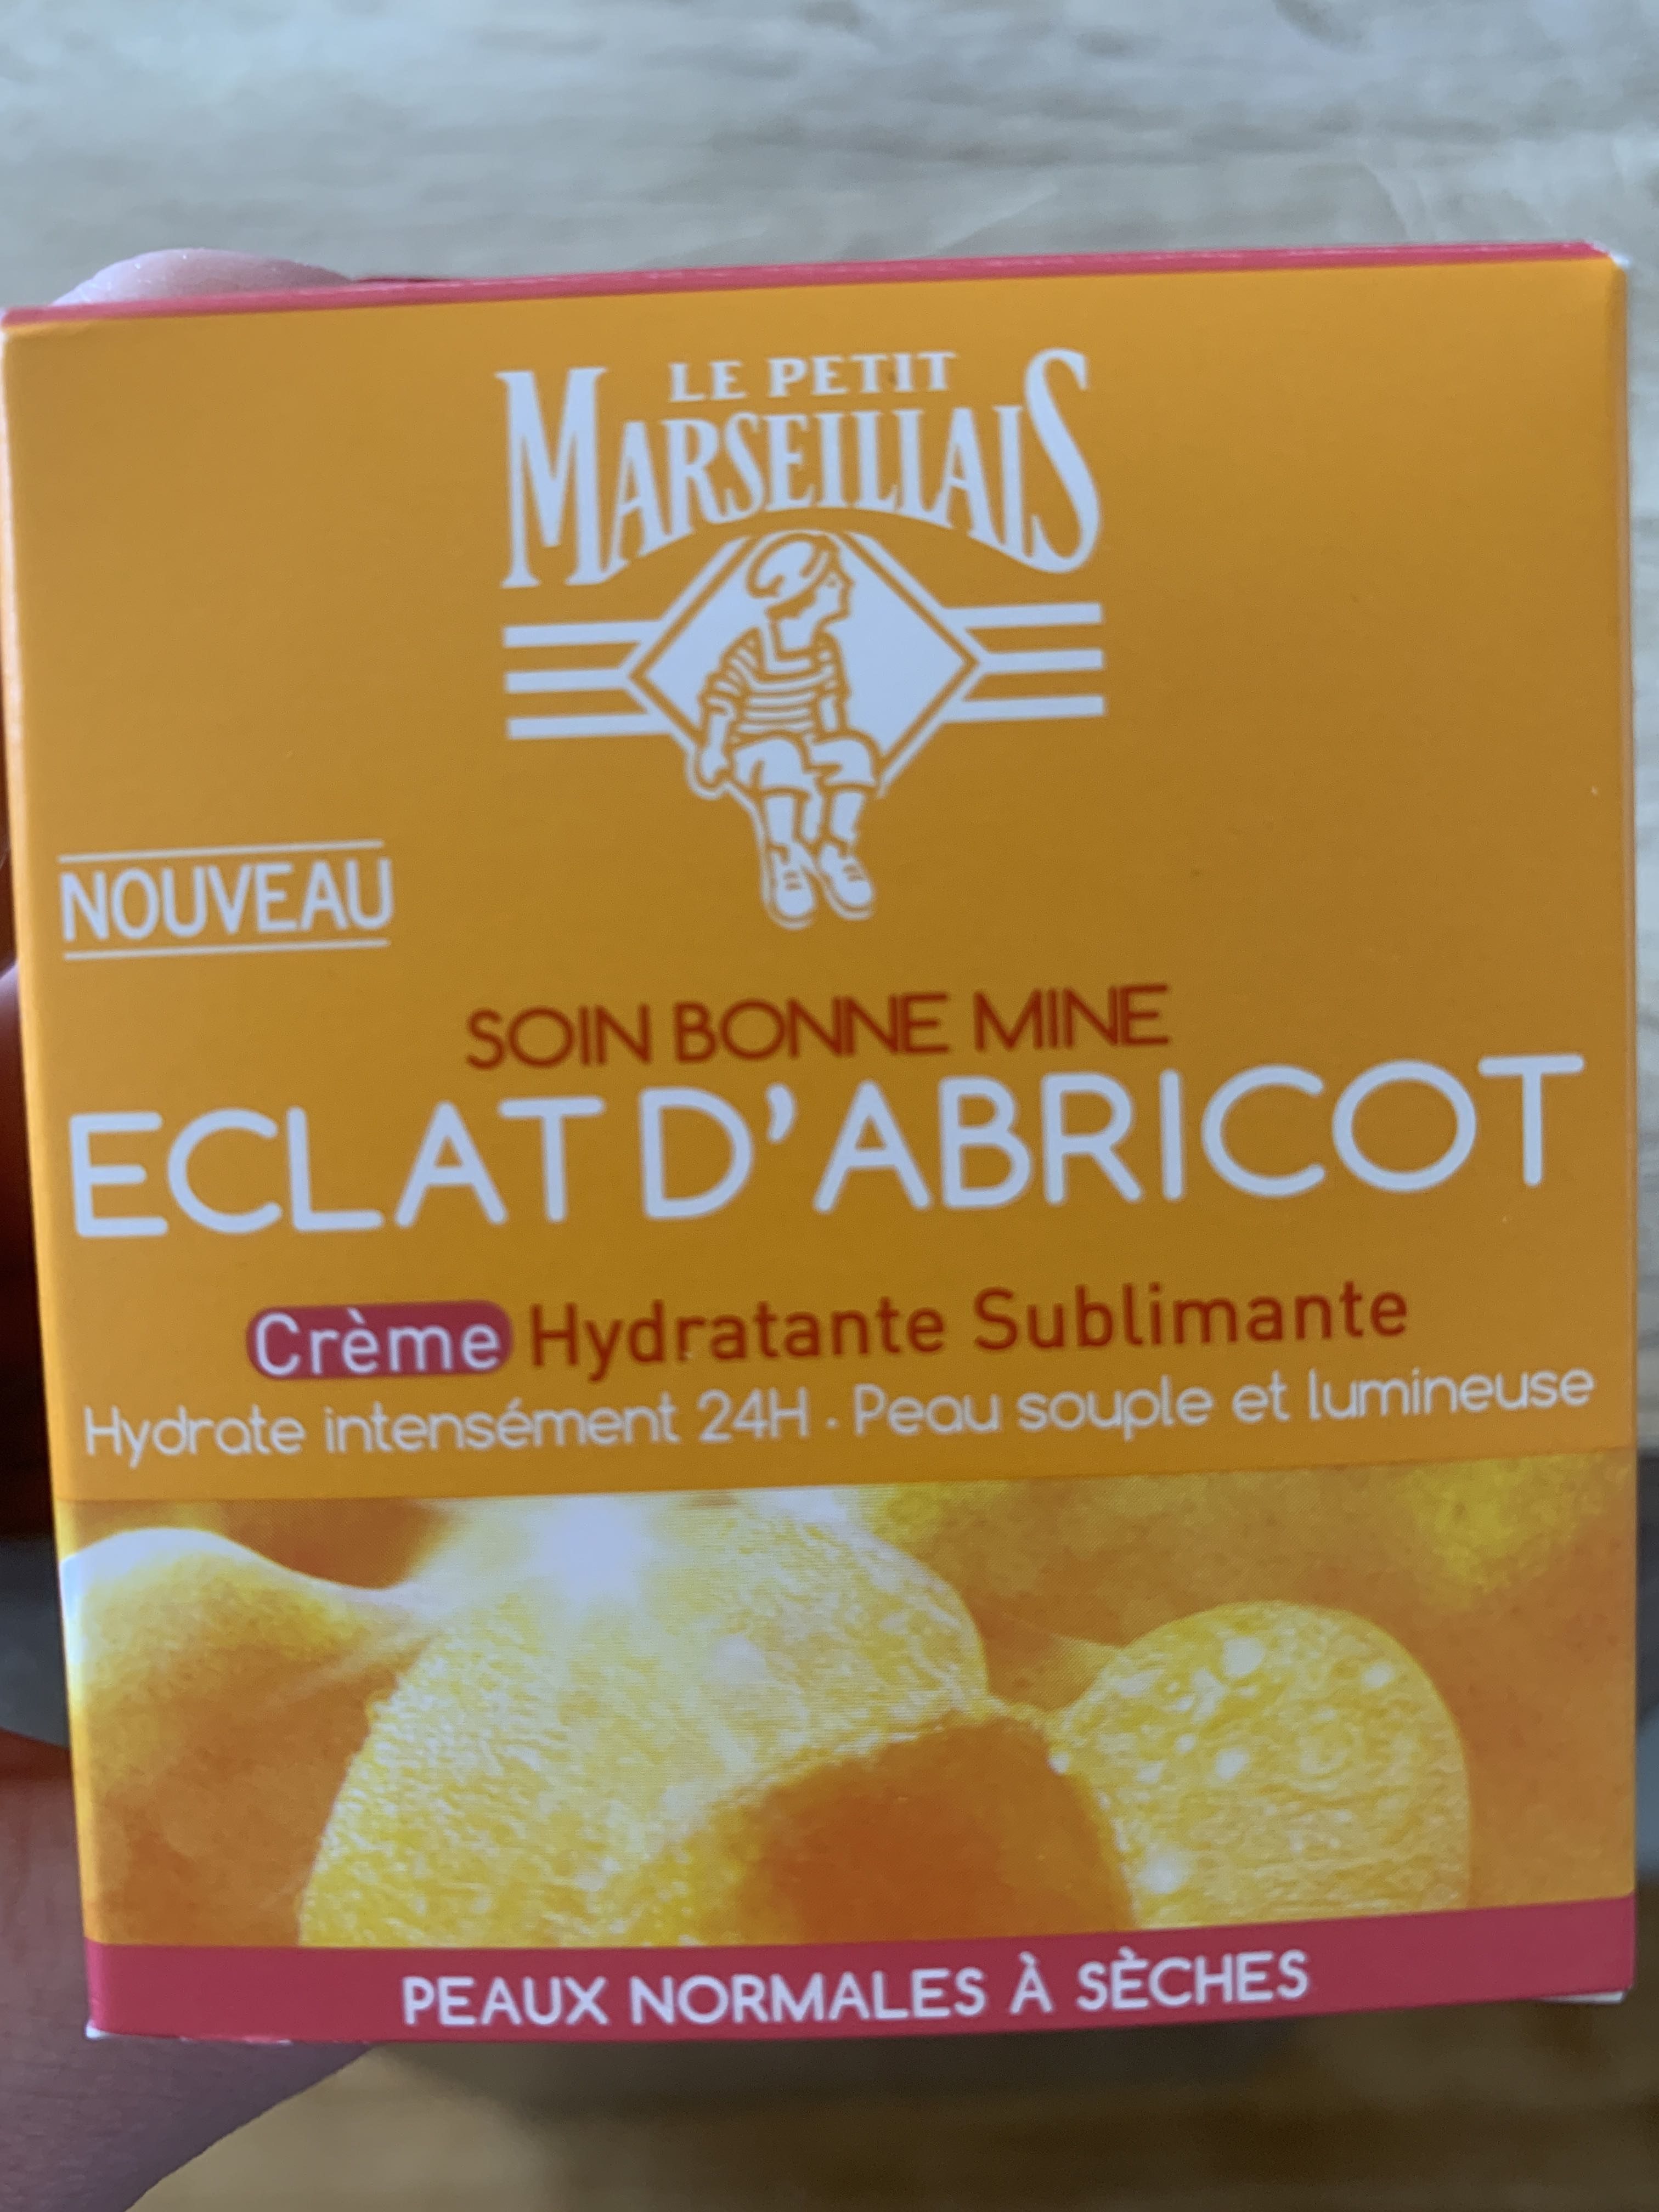 Soin bonne mine éclat d’abricot crème hydratante - Продукт - fr